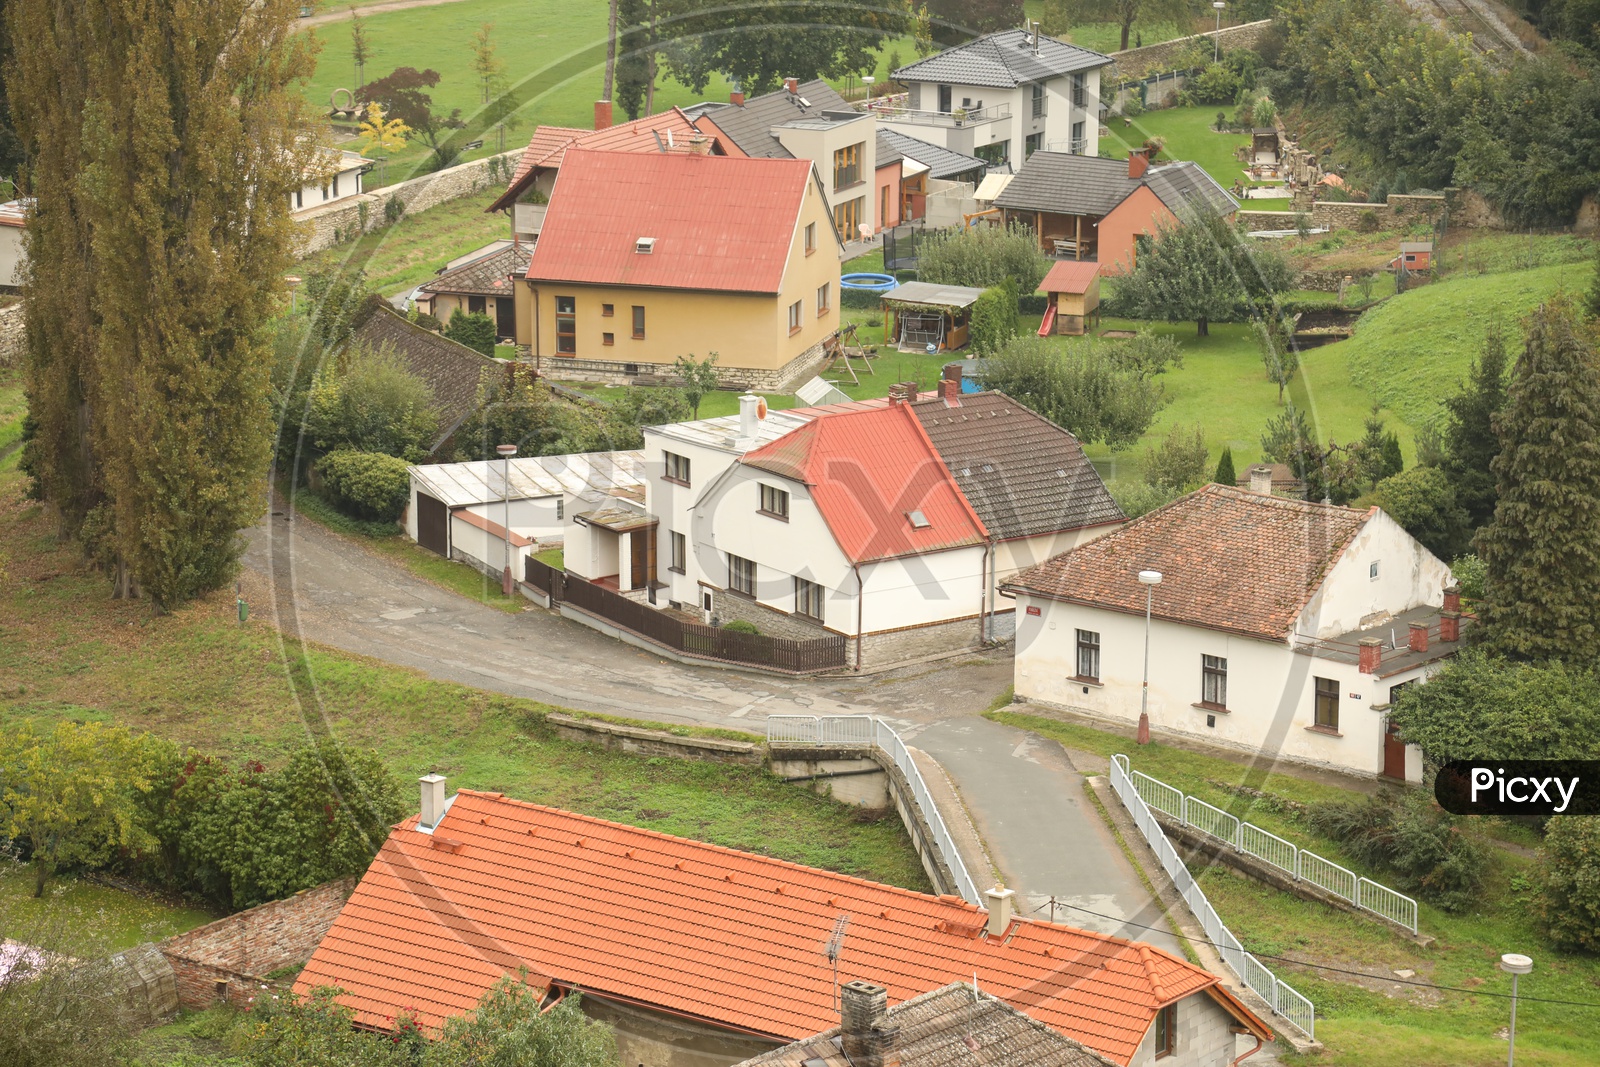 Tiled houses